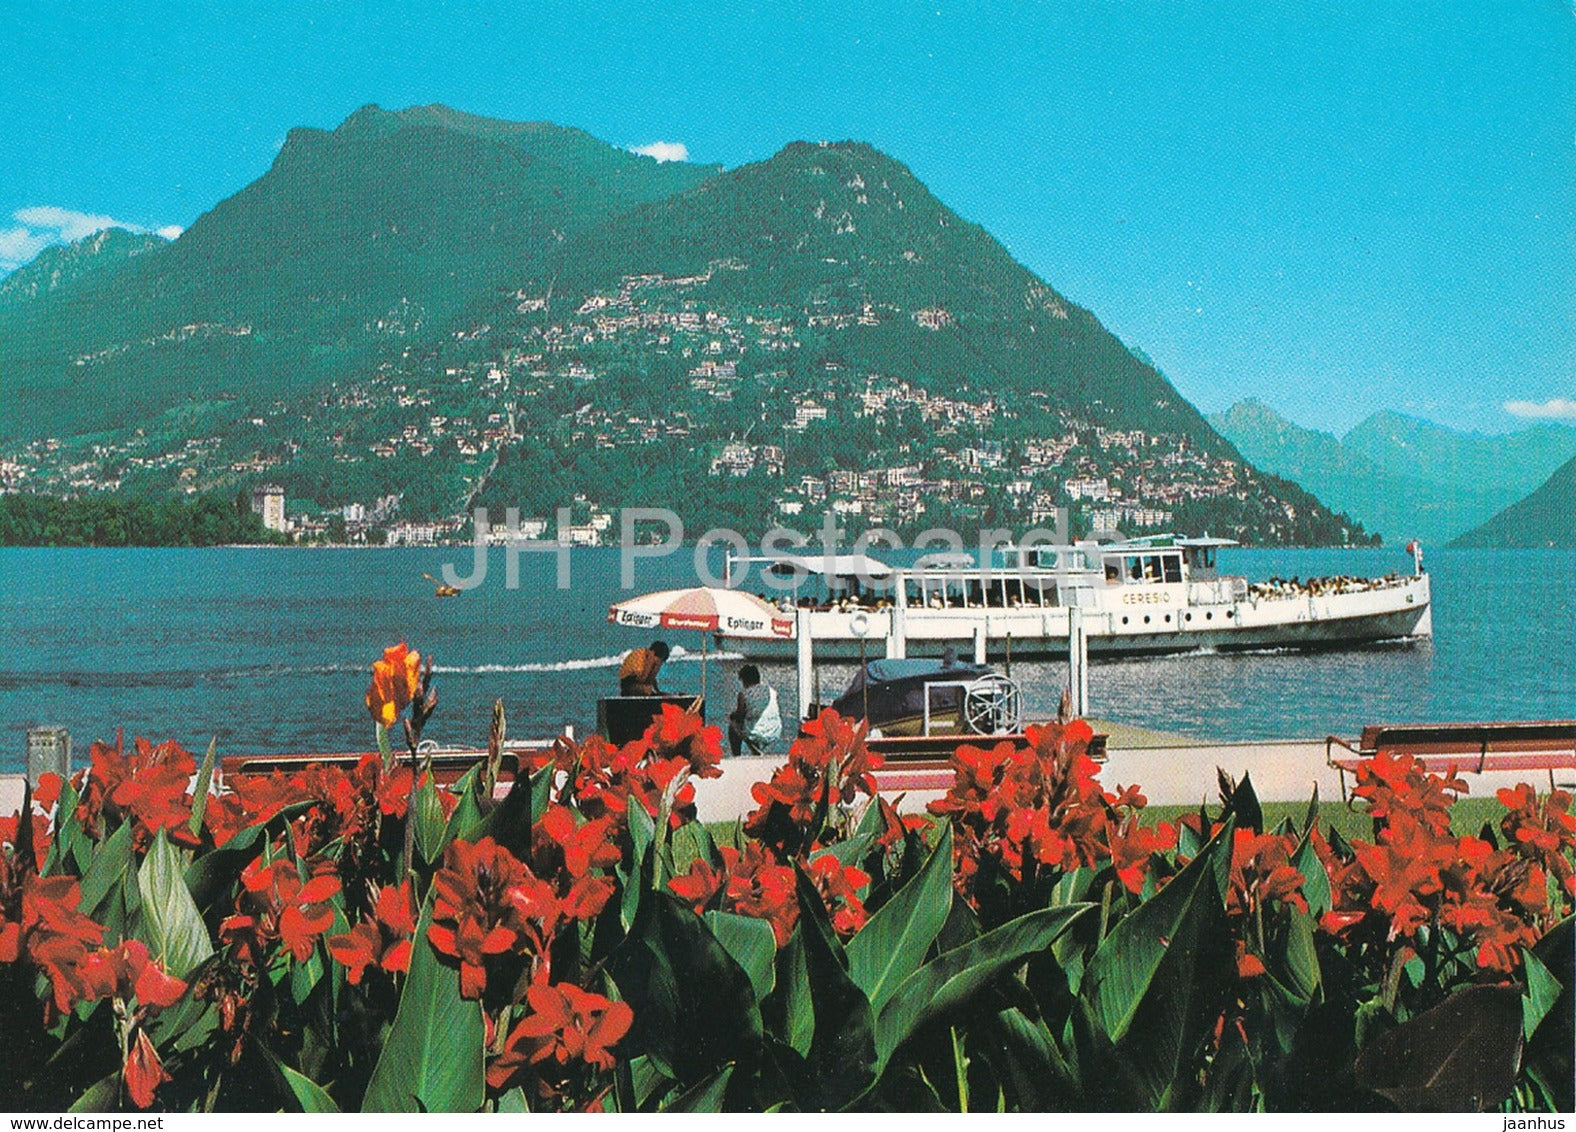 Lugano - Vista sul Monte Bre e Monte Boglia -  passenger boat MS Ceresio - Switzerland - used - JH Postcards